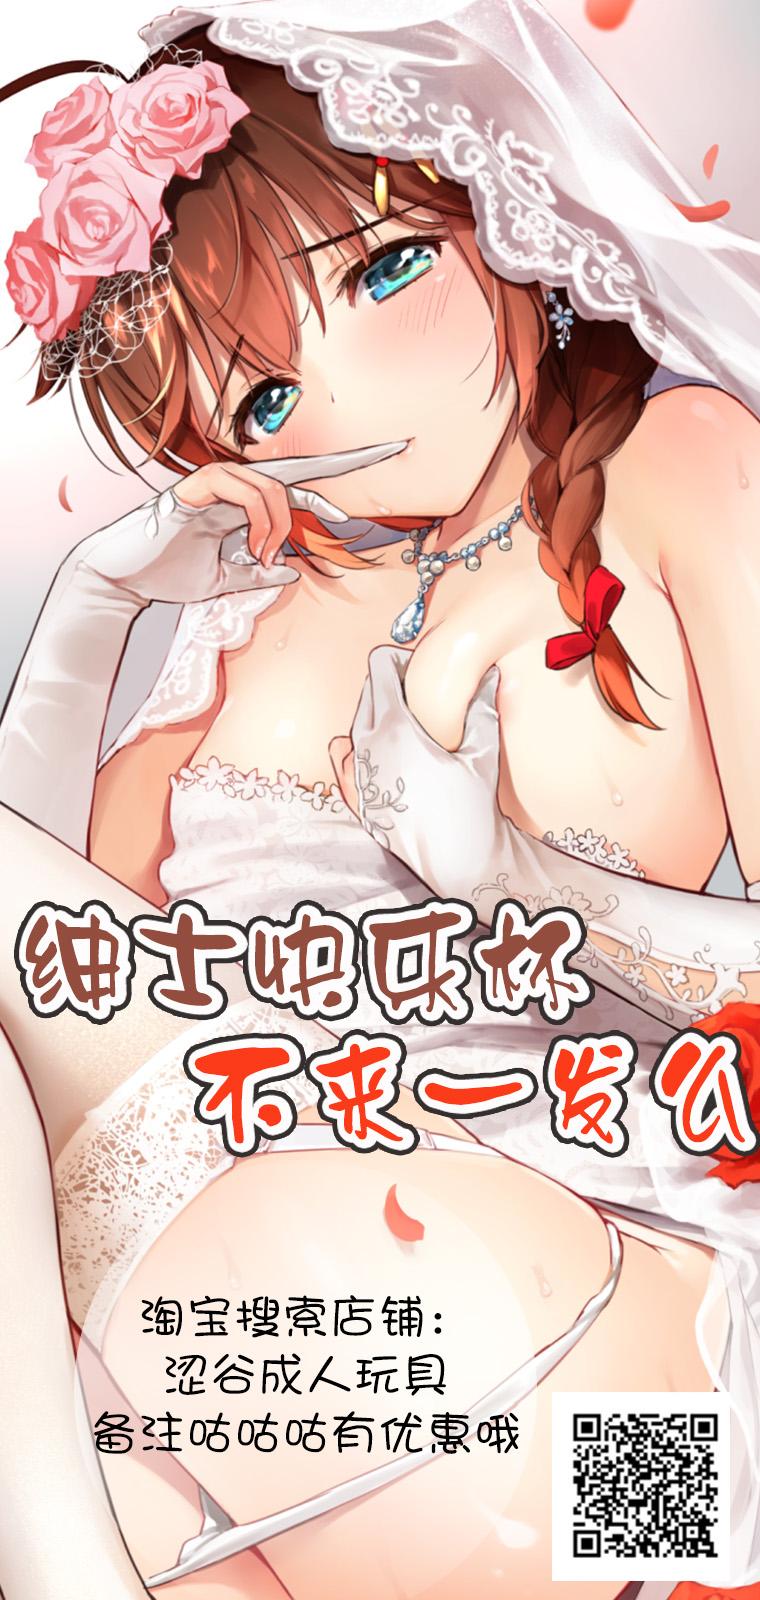 Porno Tsukiyo wa Yukemuri no Naka ni - Love live Sister - Page 32